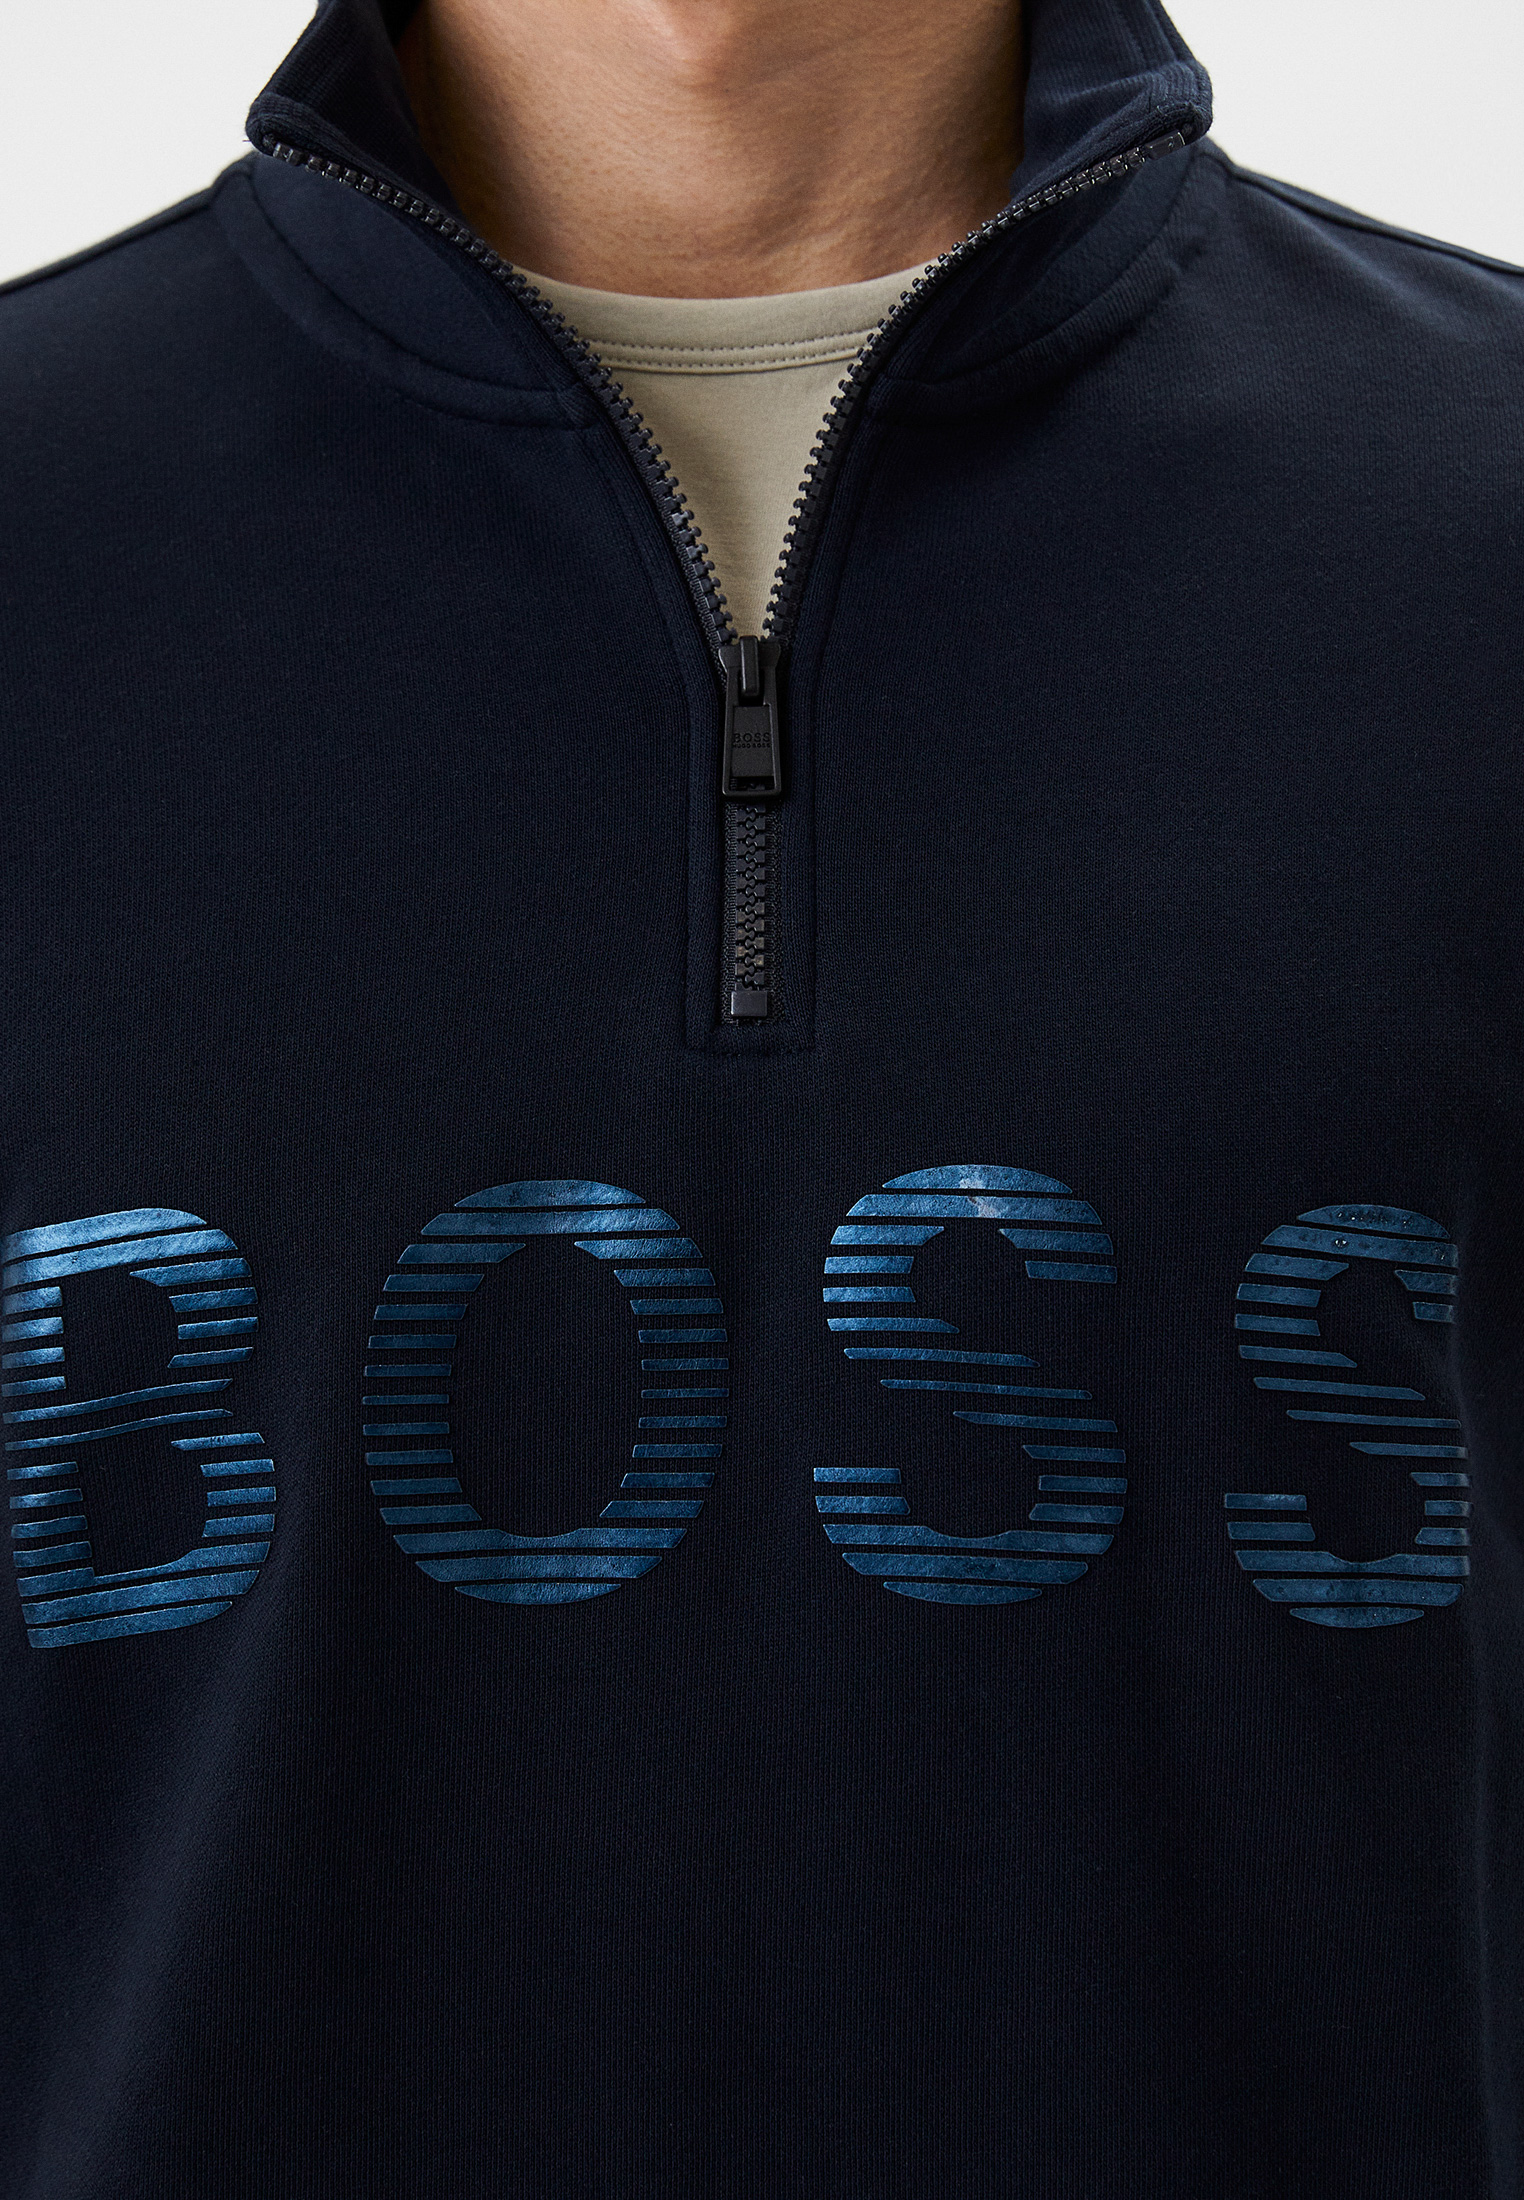 Олимпийка Boss (Босс) 50472242: изображение 4